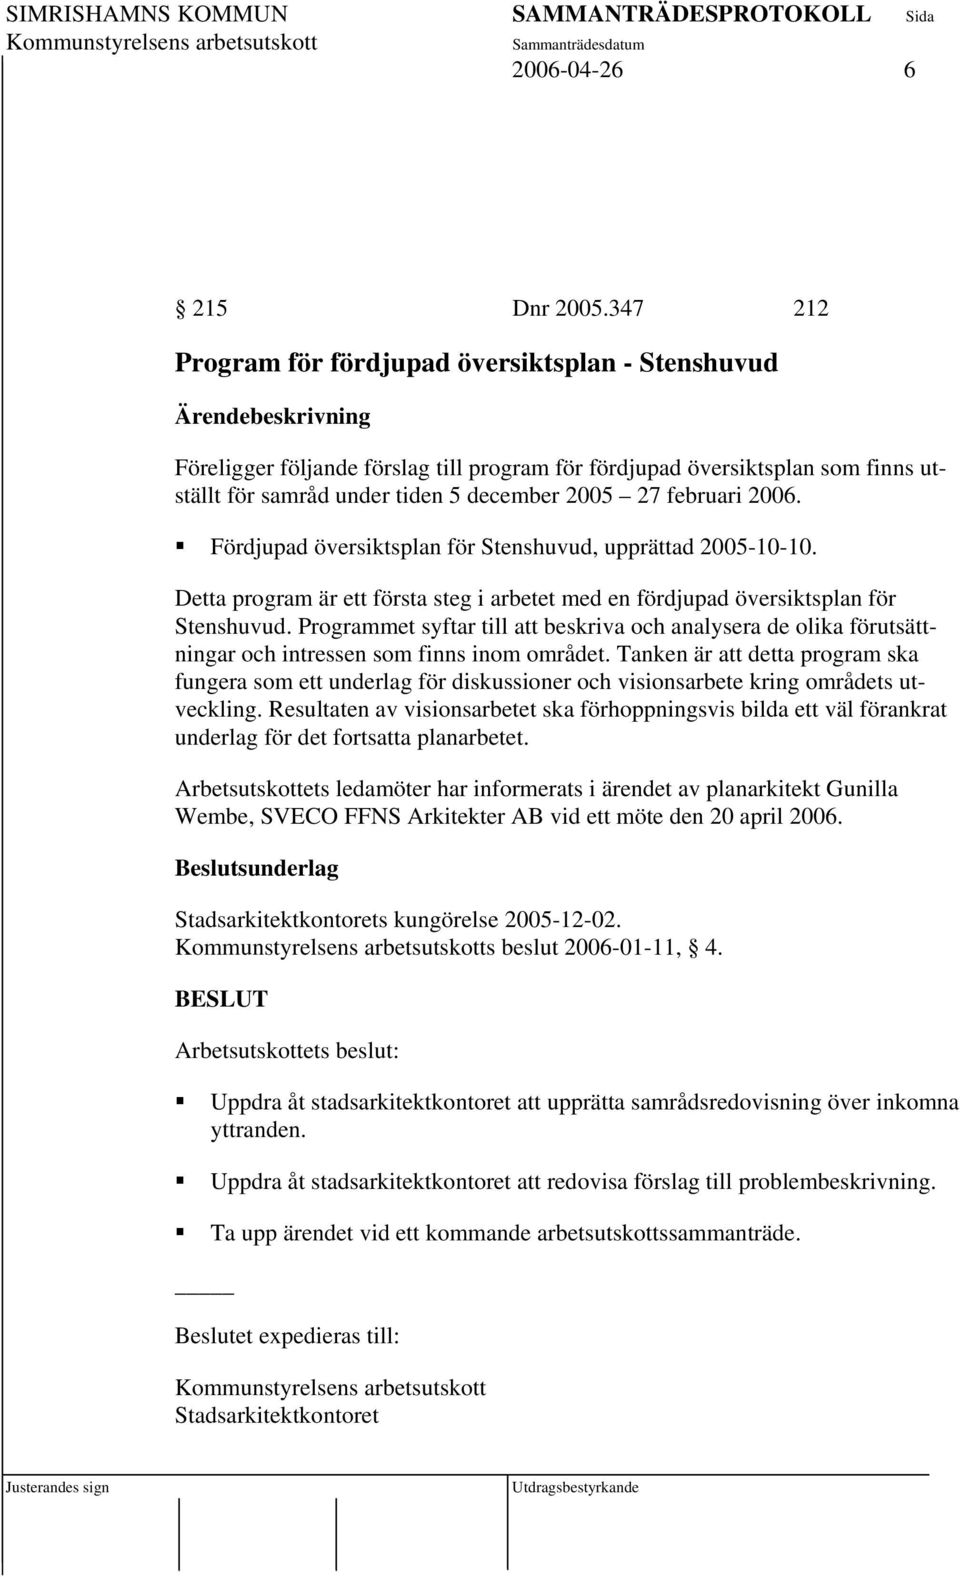 2005 27 februari 2006. Fördjupad översiktsplan för Stenshuvud, upprättad 2005-10-10. Detta program är ett första steg i arbetet med en fördjupad översiktsplan för Stenshuvud.